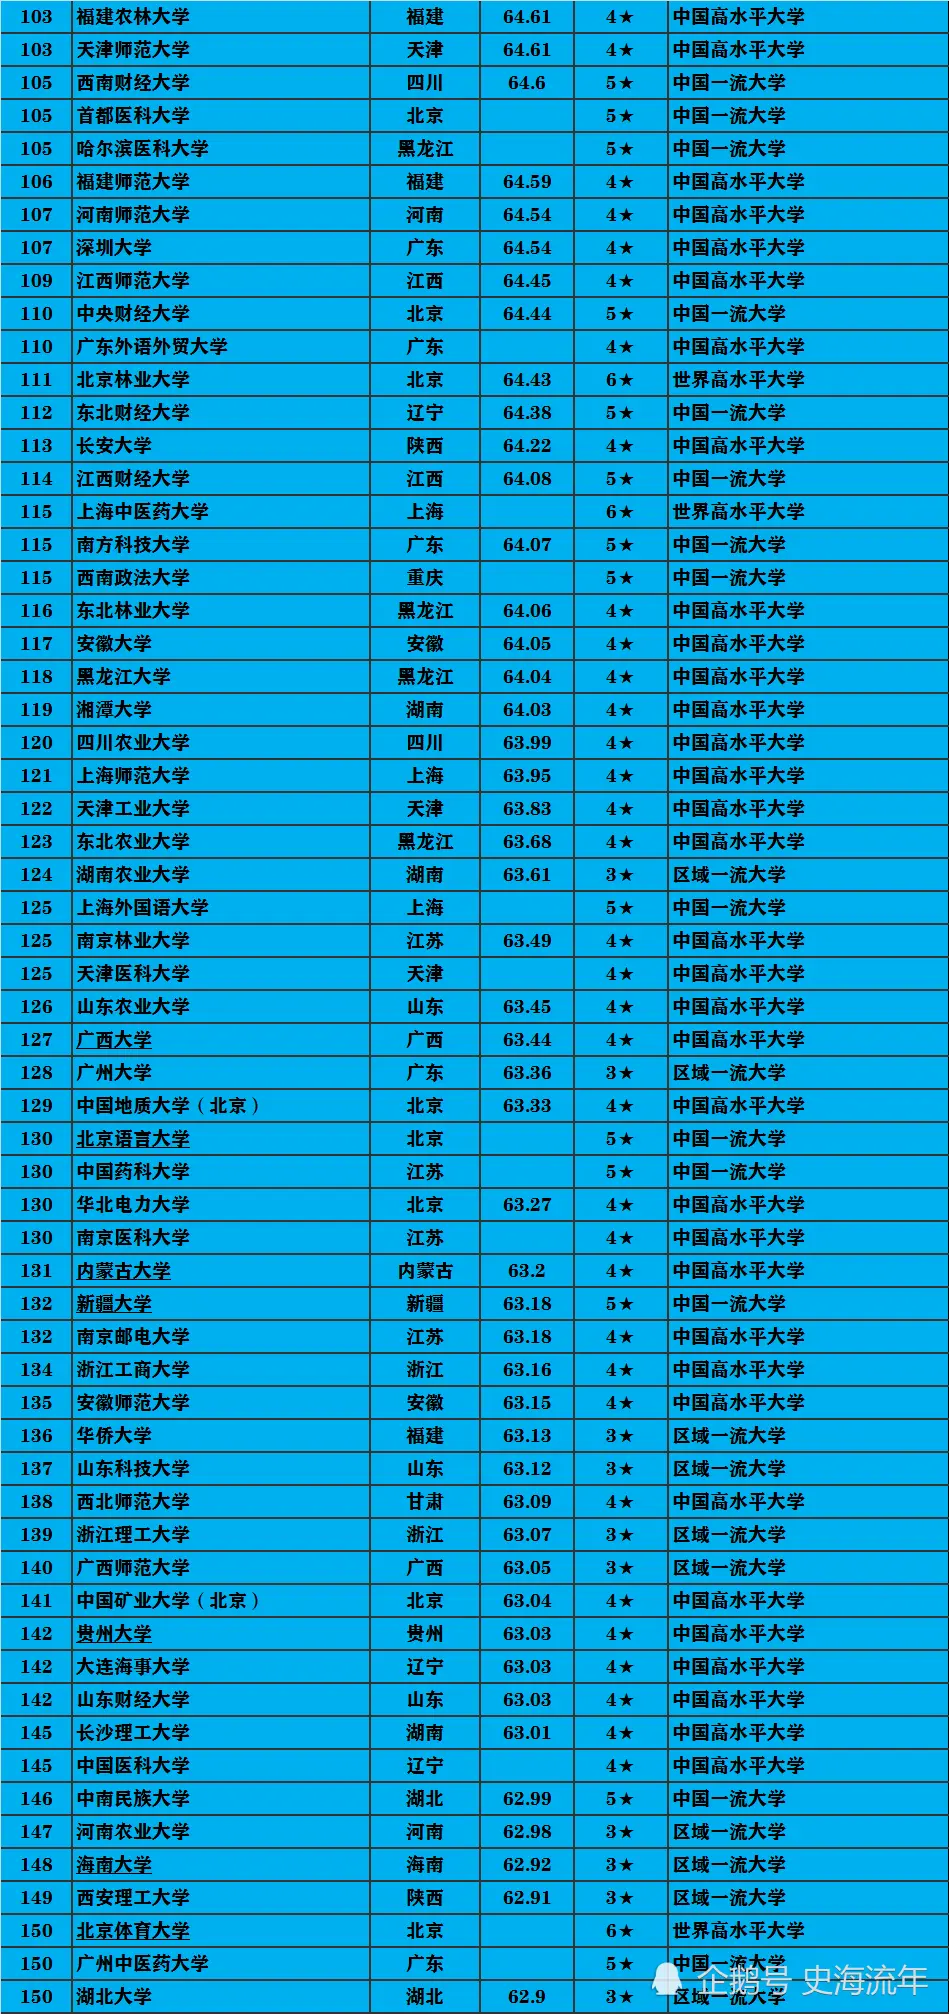 832所高校排行榜！北大超清华，复旦超浙大，北京协和第50！